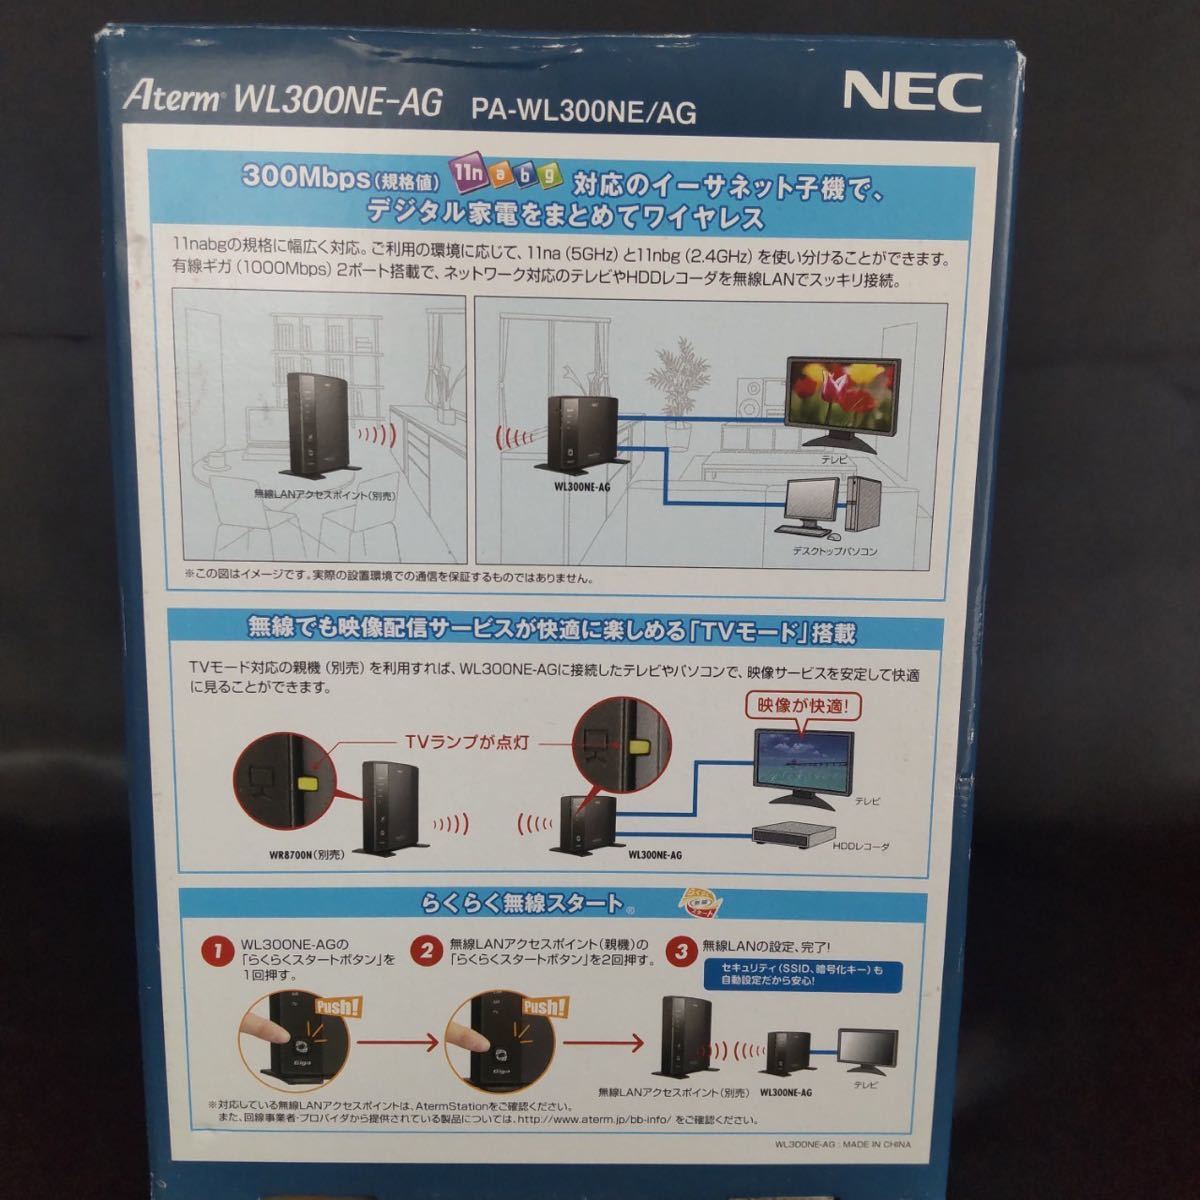 NEC Aterm WL300NE-AG ワイヤレスイーサネットコンバータ PA-WL300NE/AG ネットワーク 対応テレビやHDDレコーダをまとめてワイヤレス_画像7